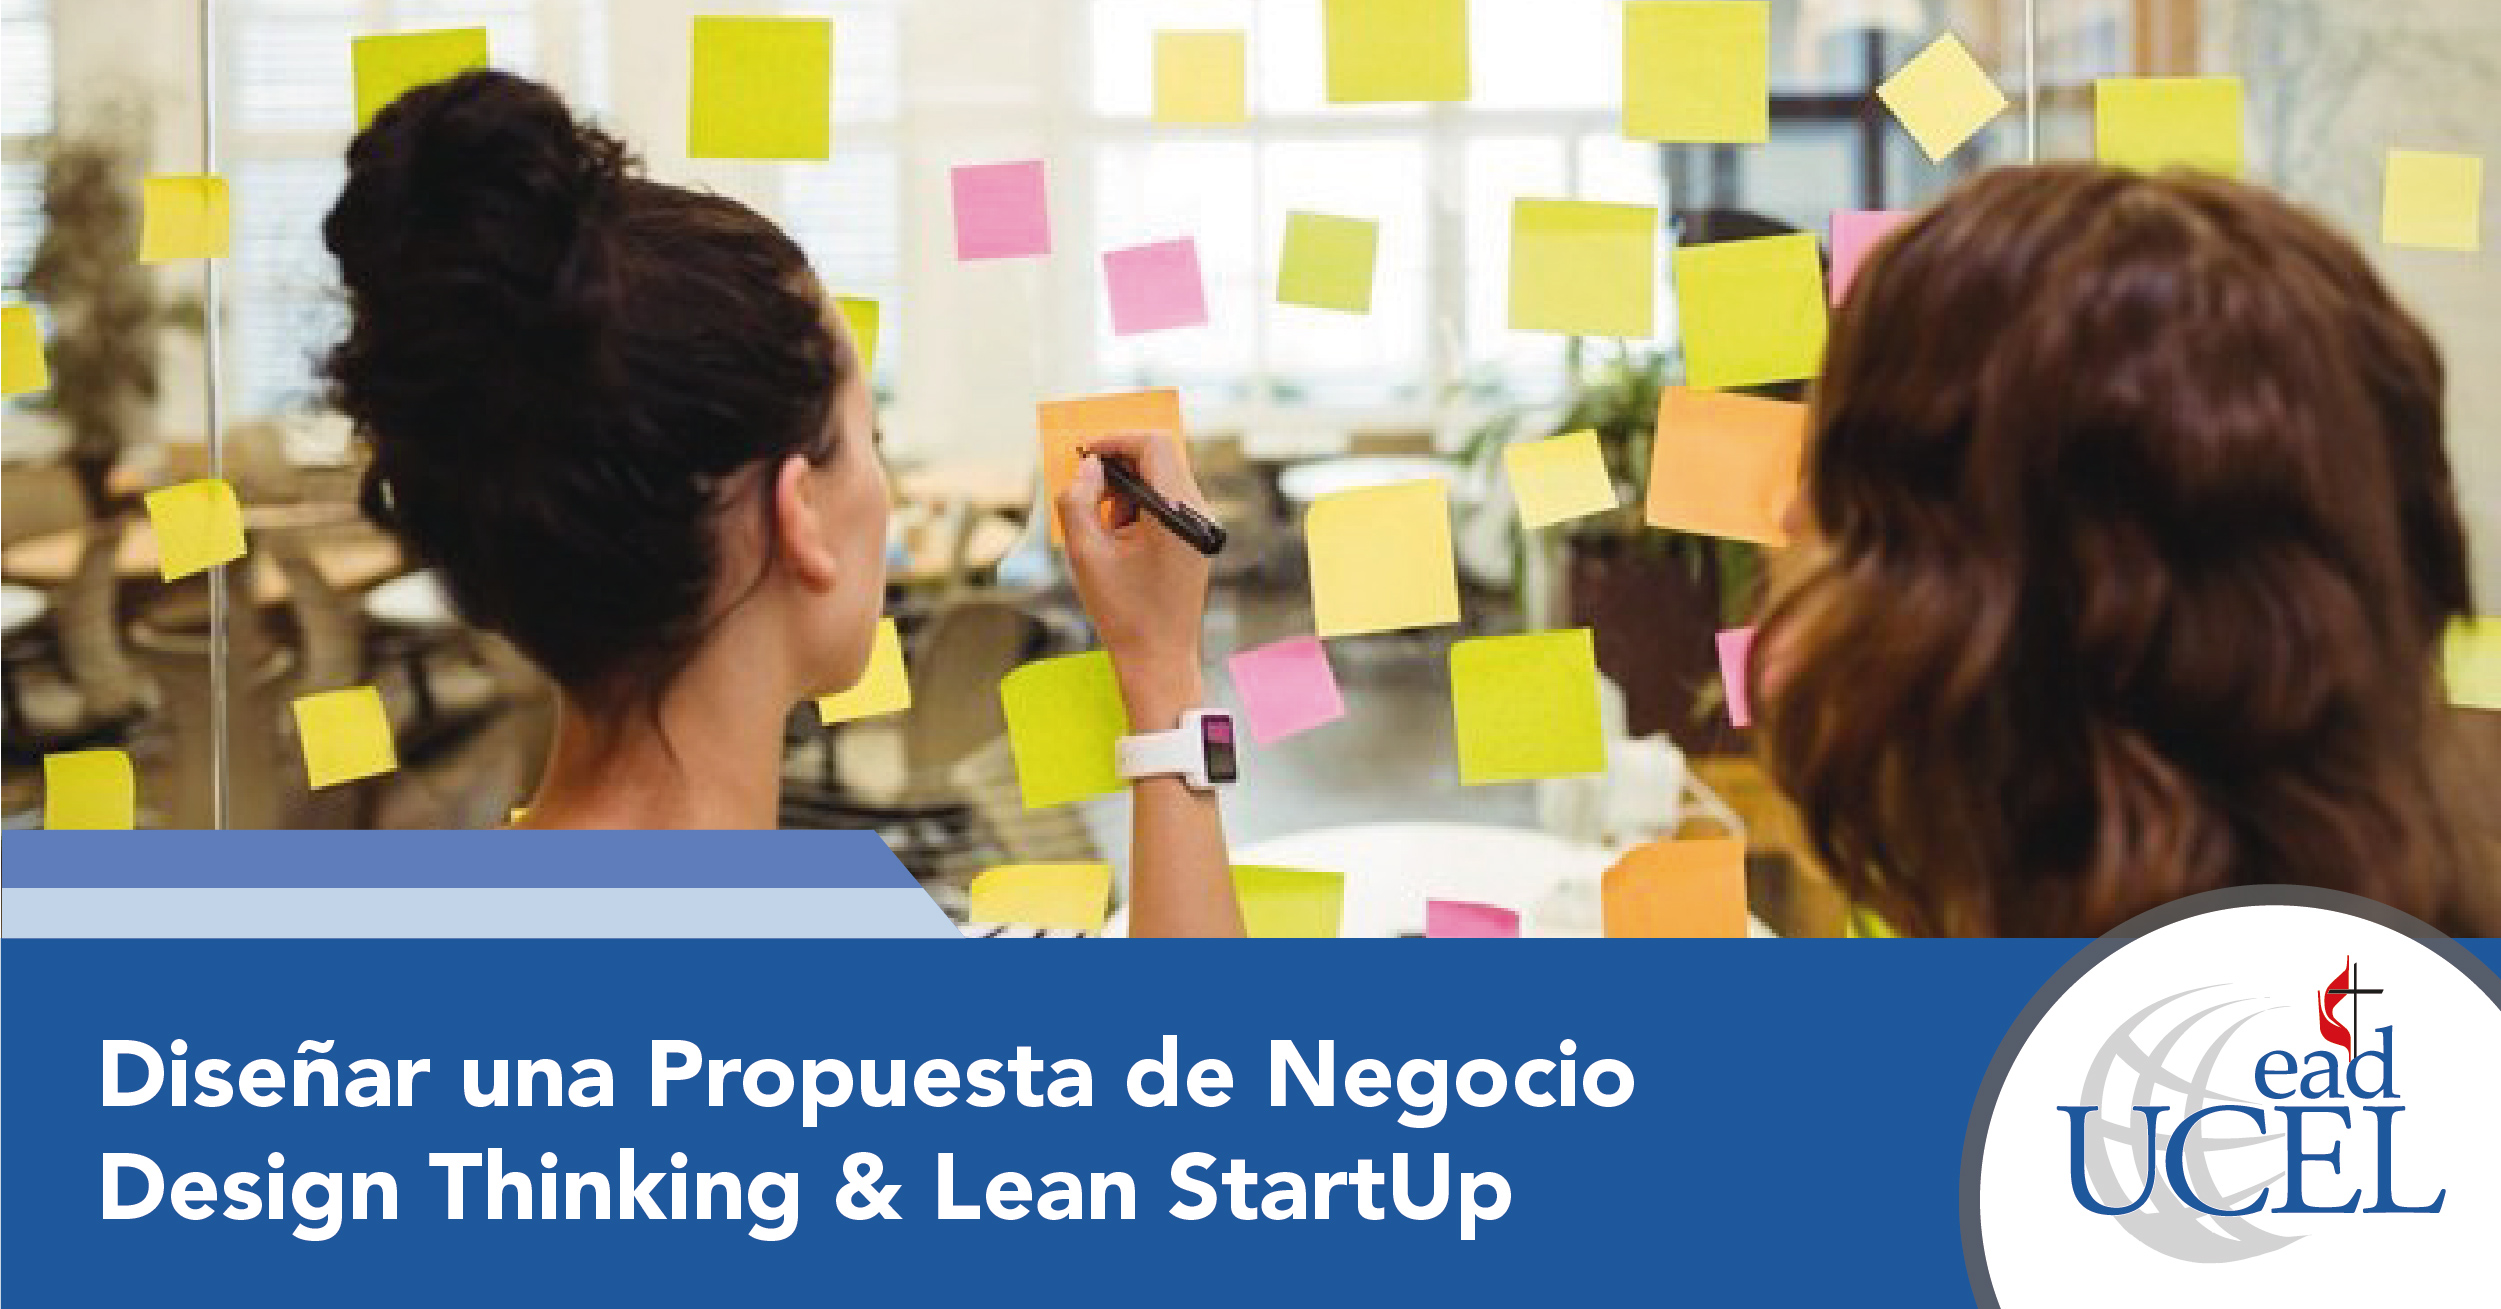 Diseñar una Propuesta de Negocio - Design Thinking & Lean StartUp